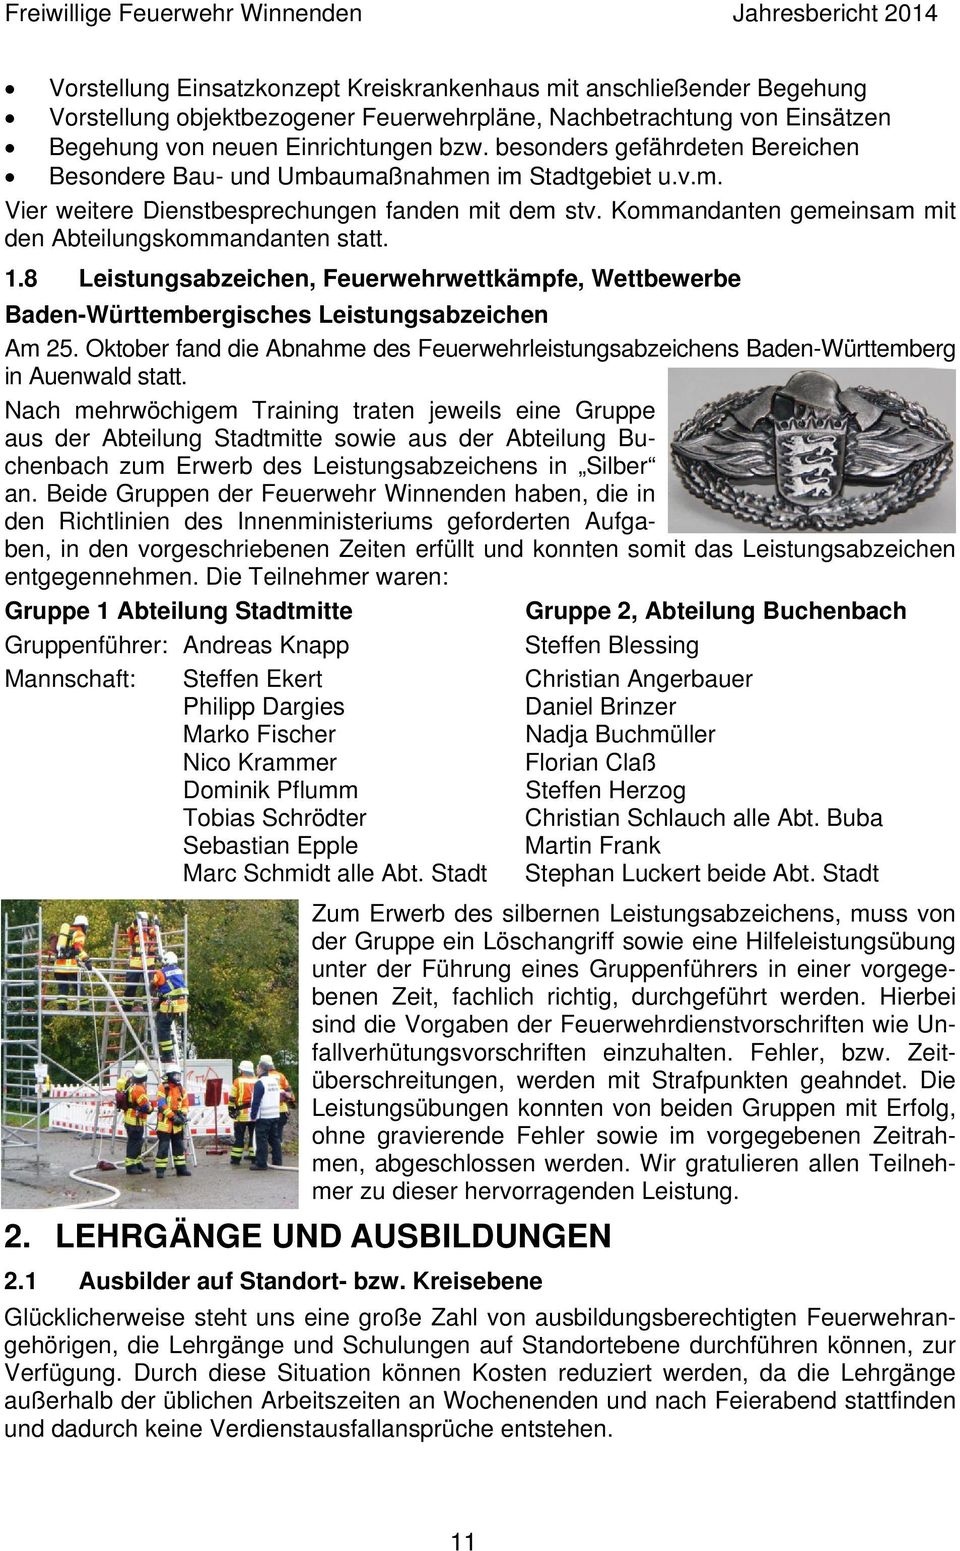 Kommandanten gemeinsam mit den Abteilungskommandanten statt. 1.8 Leistungsabzeichen, Feuerwehrwettkämpfe, Wettbewerbe Baden-Württembergisches Leistungsabzeichen Am 25.